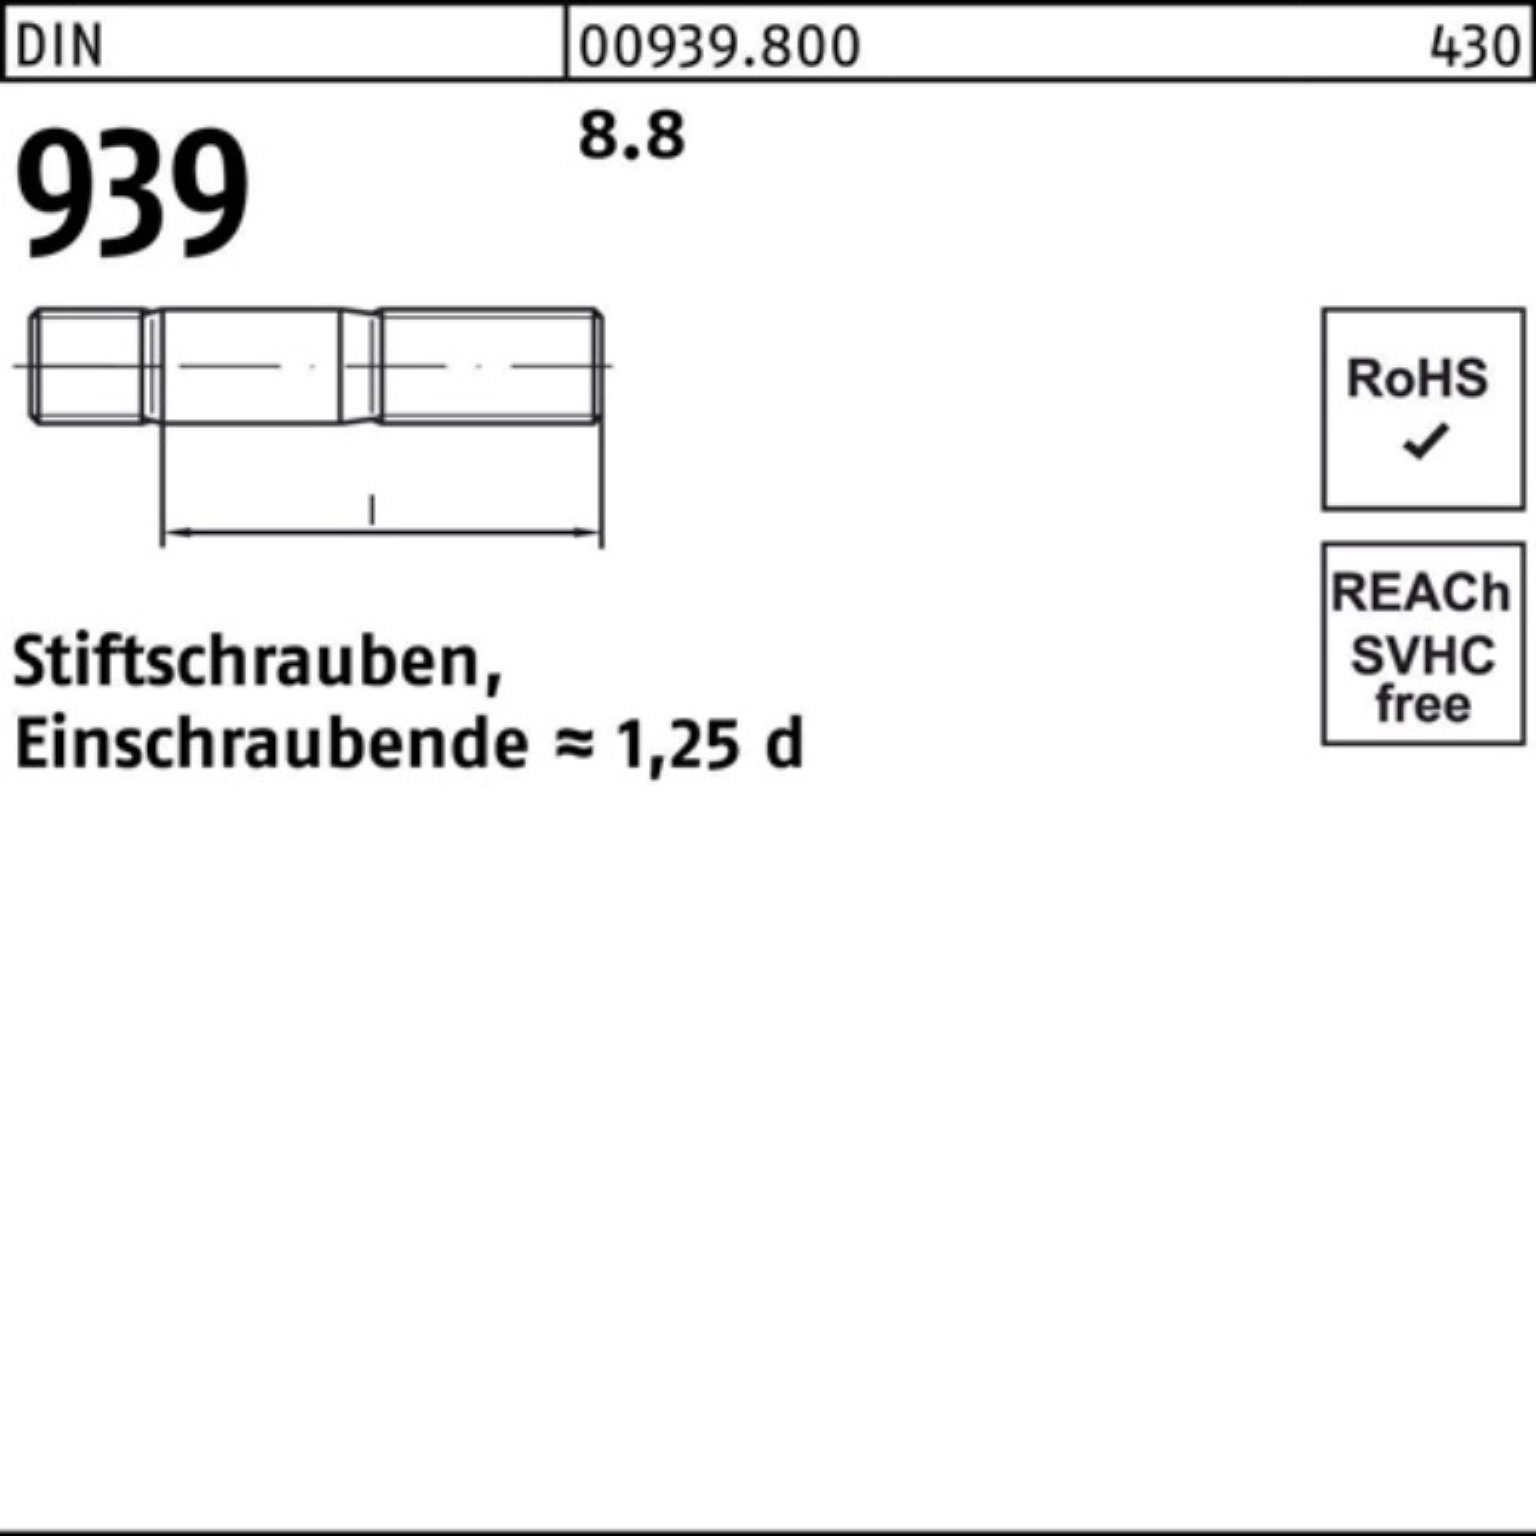 Reyher Stiftschraube Einschraubende=1,25d DIN 95 939 S 8.8 10 Stiftschraube M16x Pack 100er